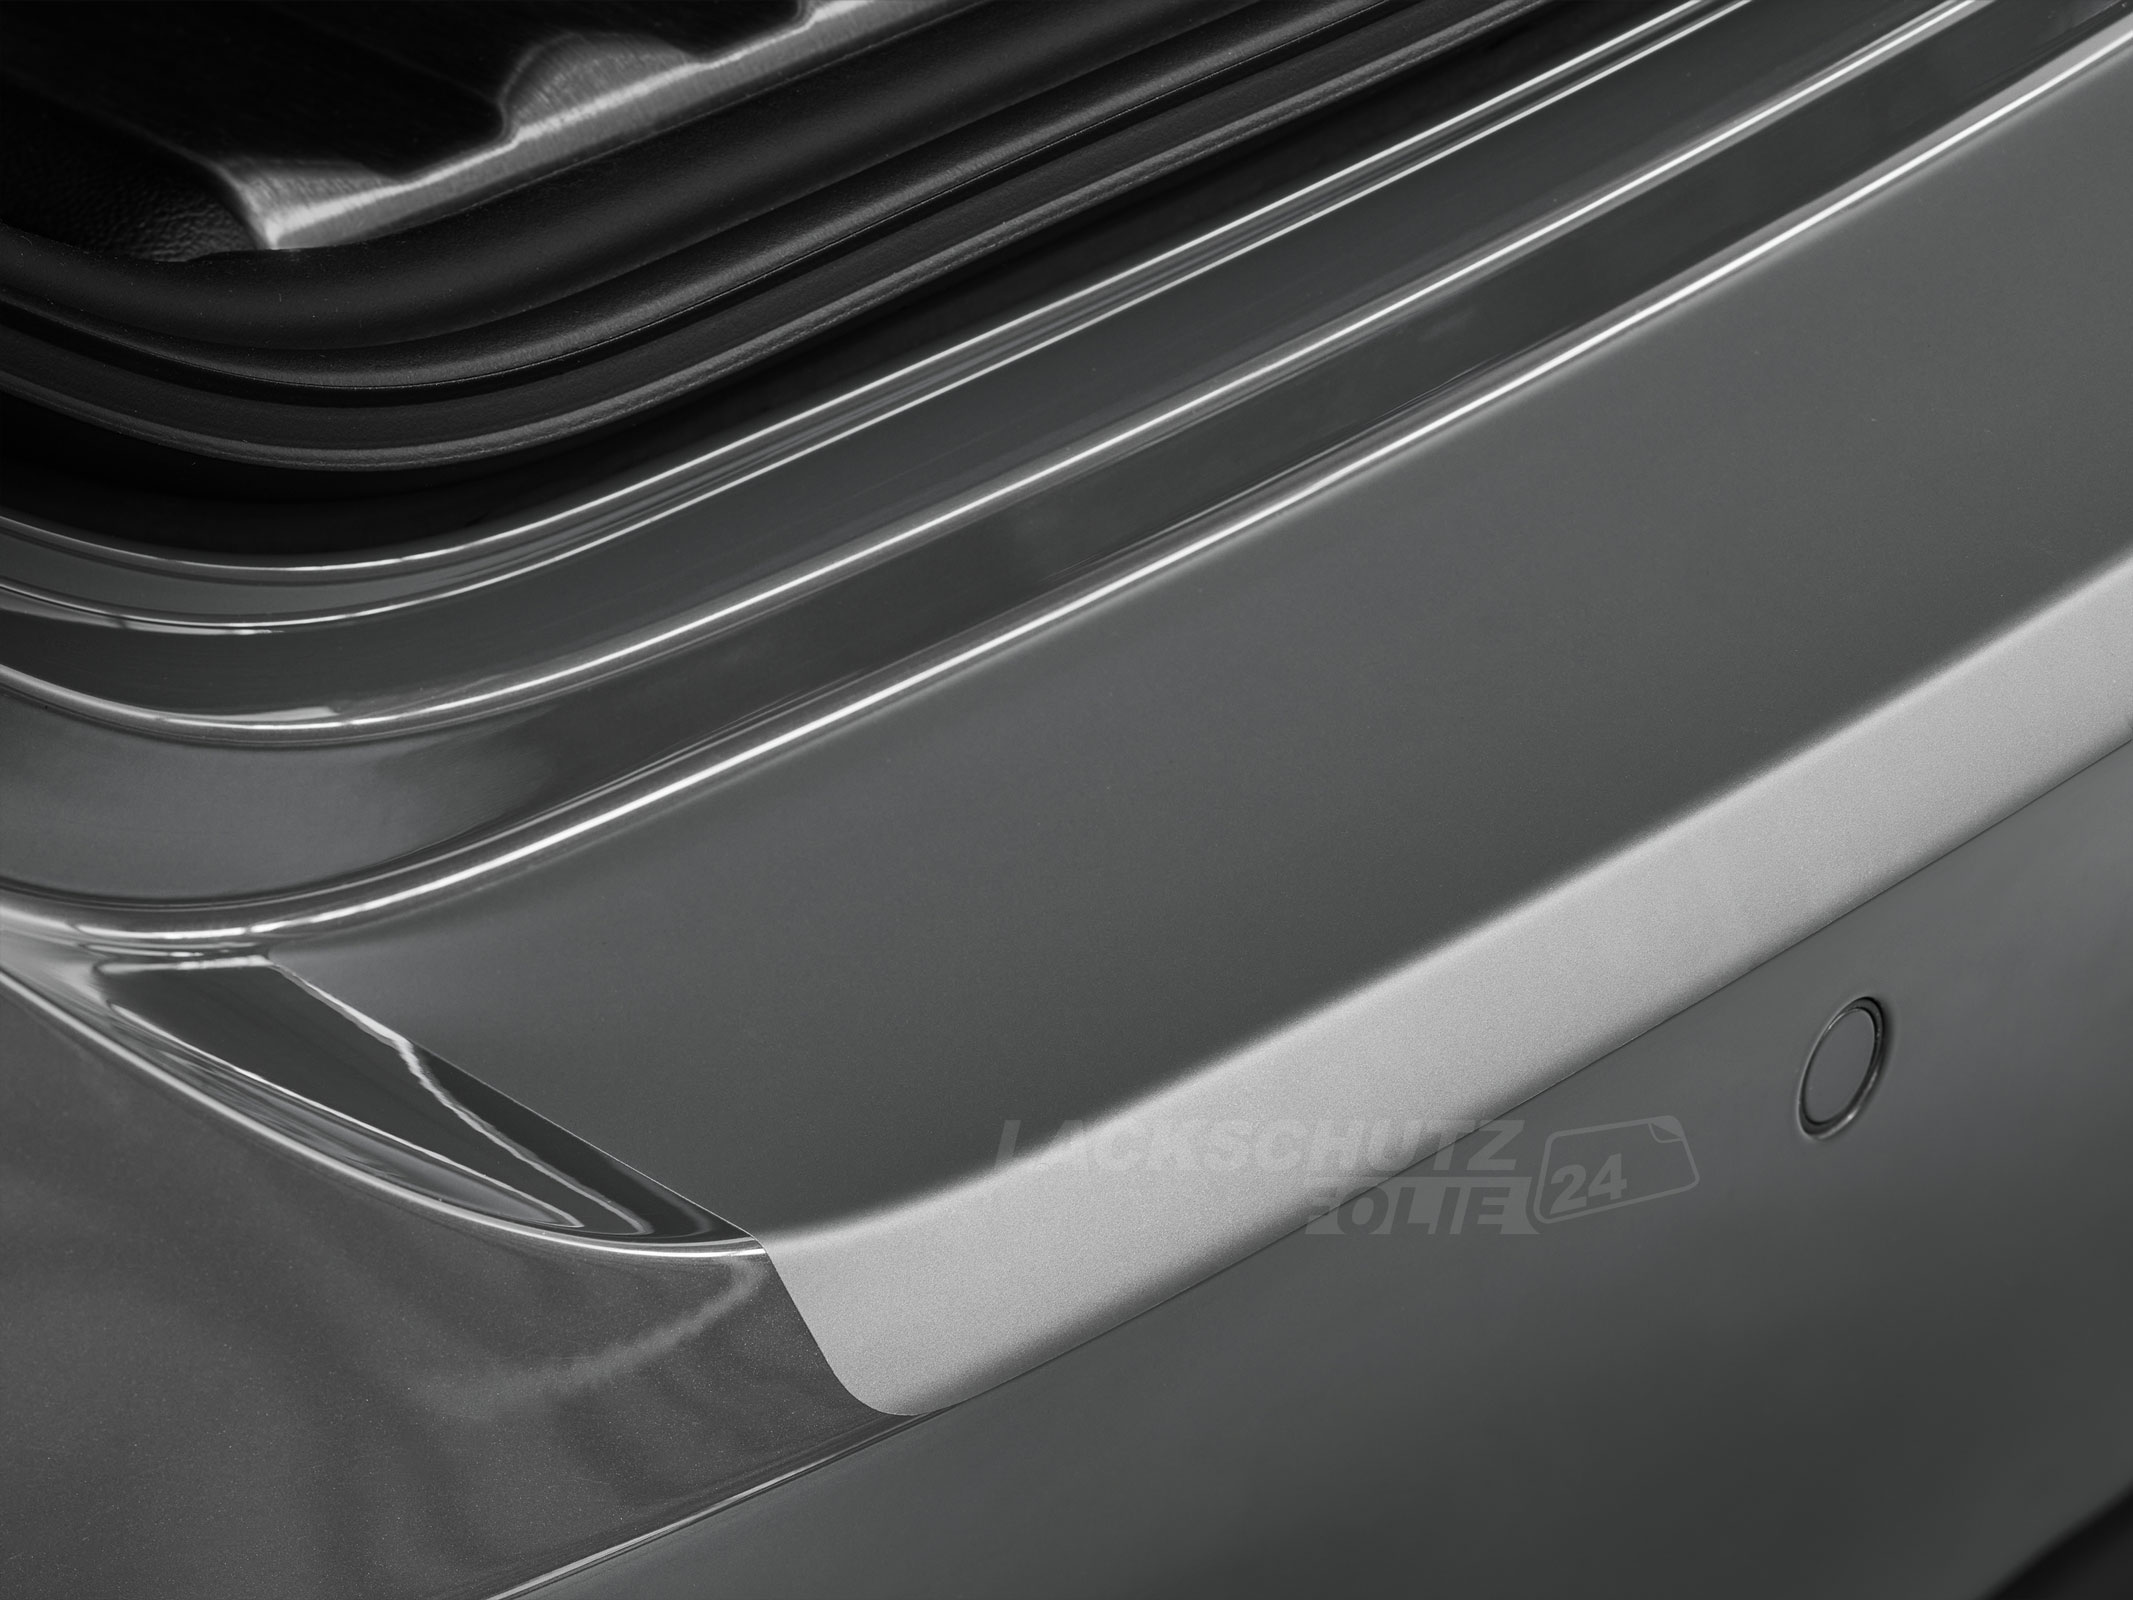 Ladekantenschutzfolie - Transparent Glatt MATT 110 µm stark  für Volvo S40 Limousine (II) ab BJ 2012